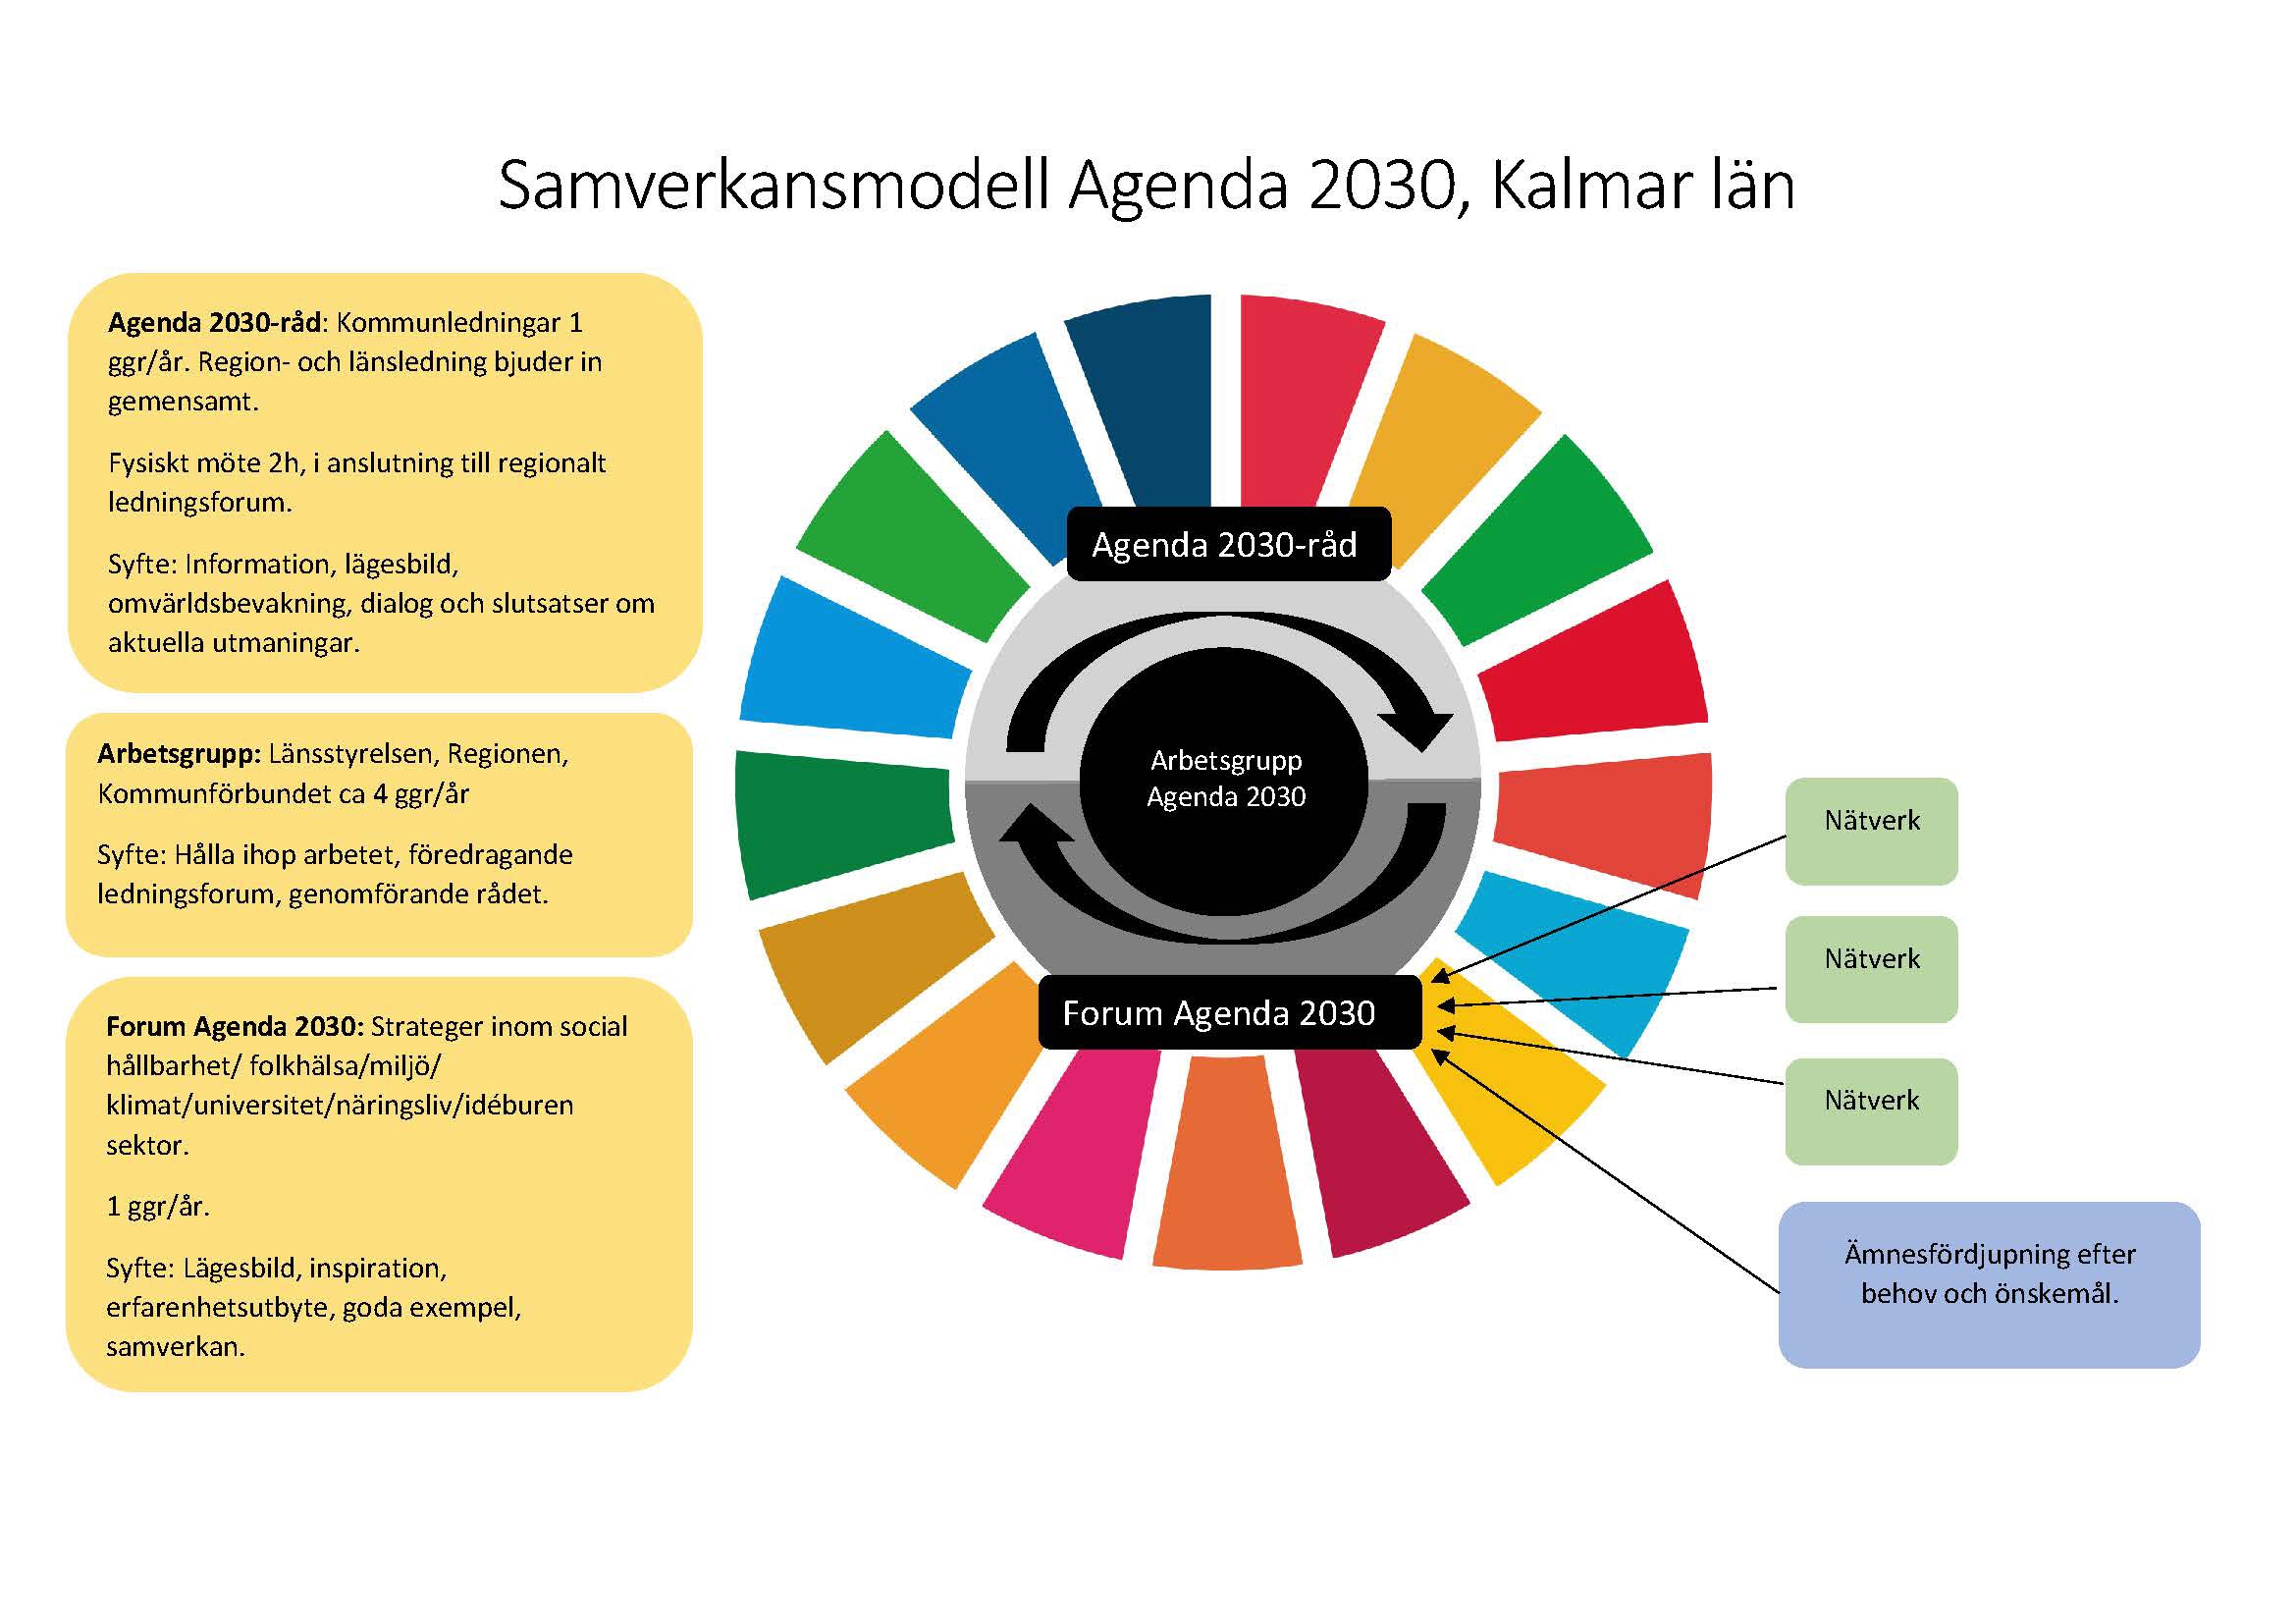 Modellen illustrerar samverkansmodellen för Agenda 2030 i länet